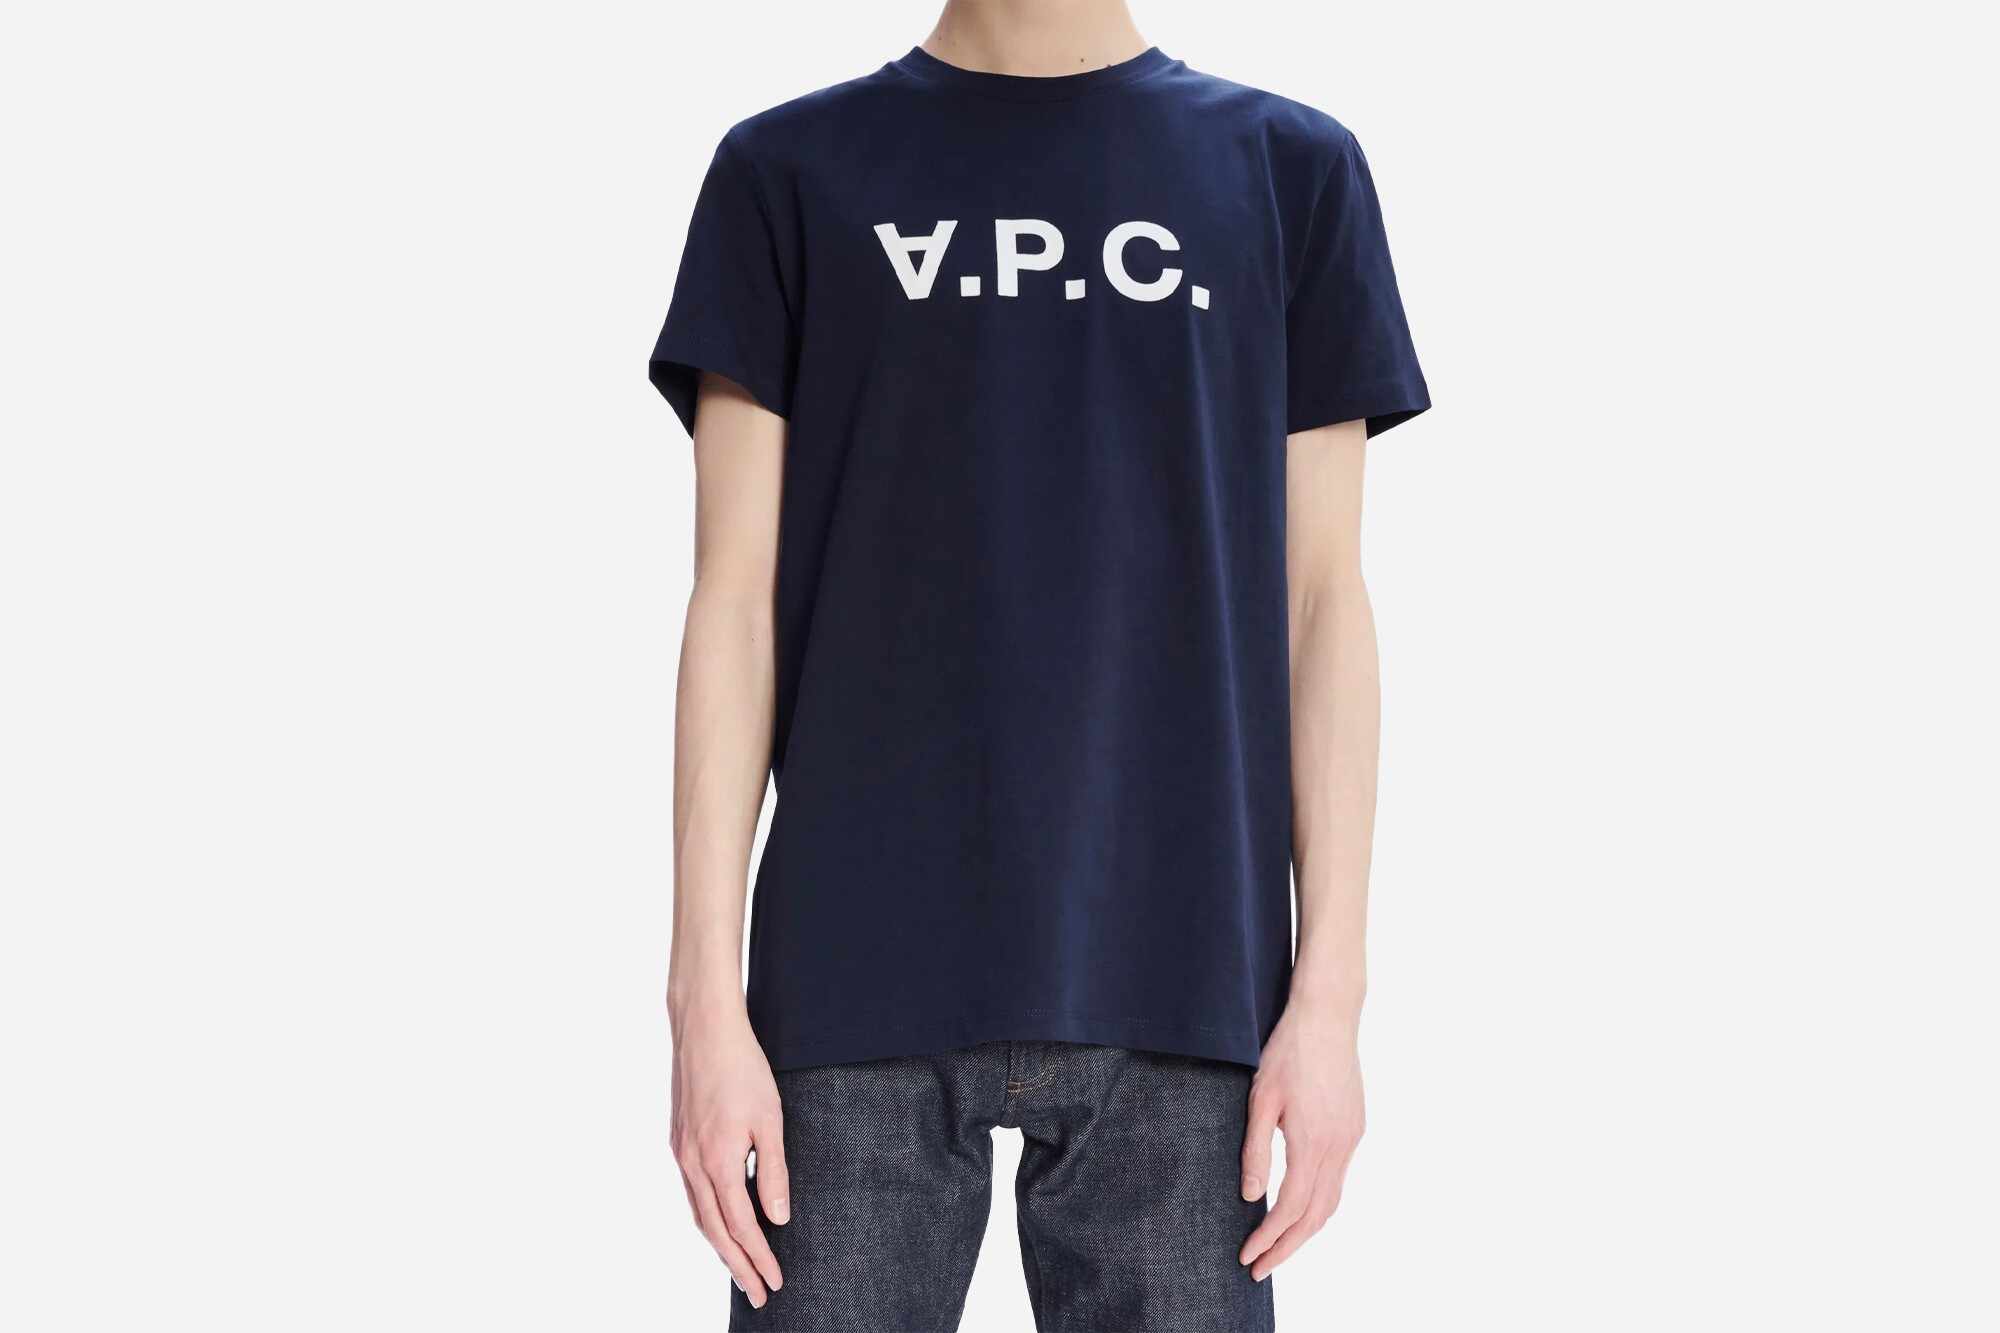 VPC Blank H T-shirt